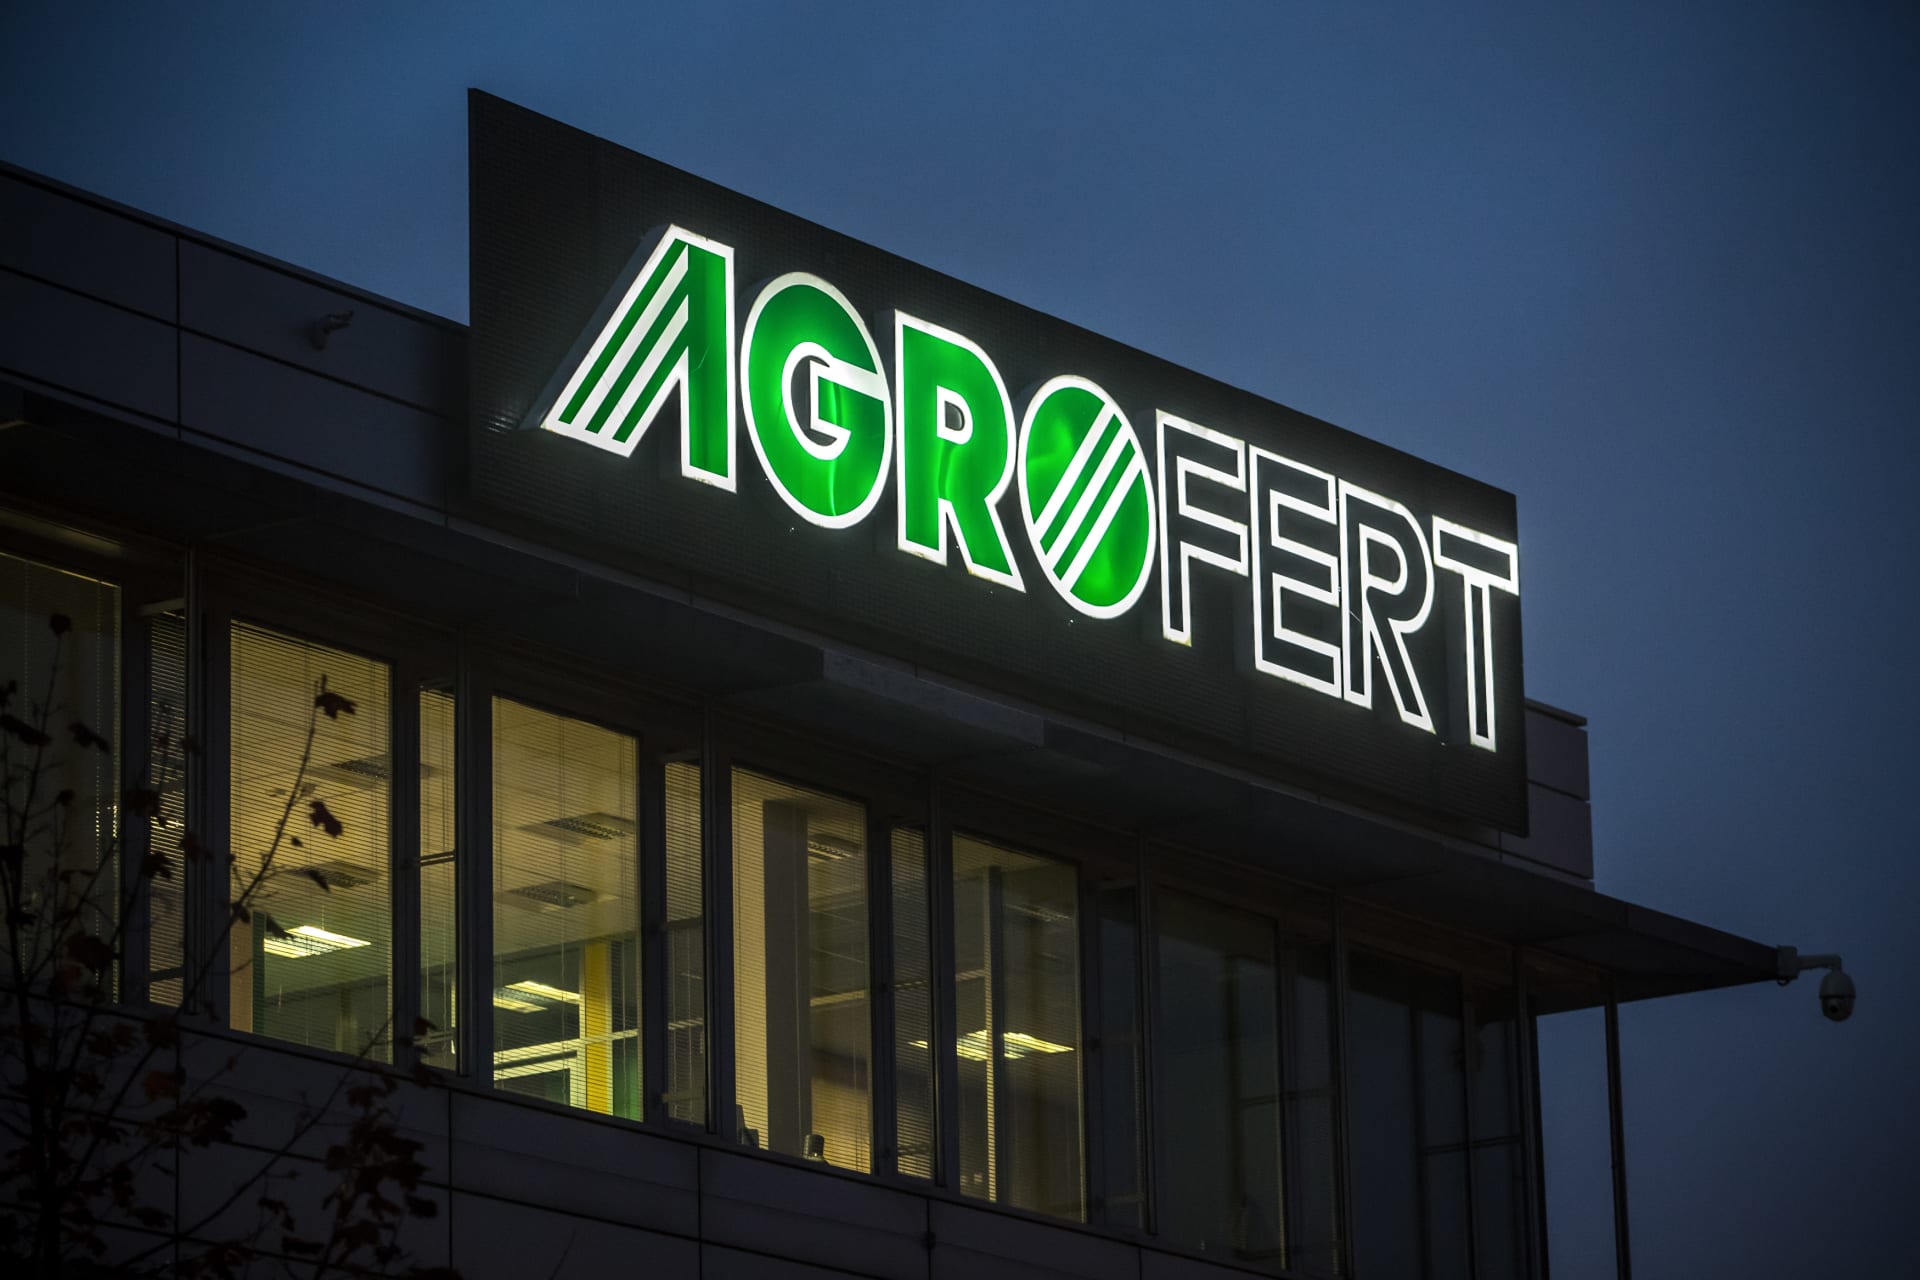 V prosinci 2007 se však přeměnilo na akciovou společnost s akciemi na majitele a později získalo padesátimilionovou evropskou dotaci v programu pro malé a střední podniky, na kterou by jako součást Agrofertu nemělo nárok.